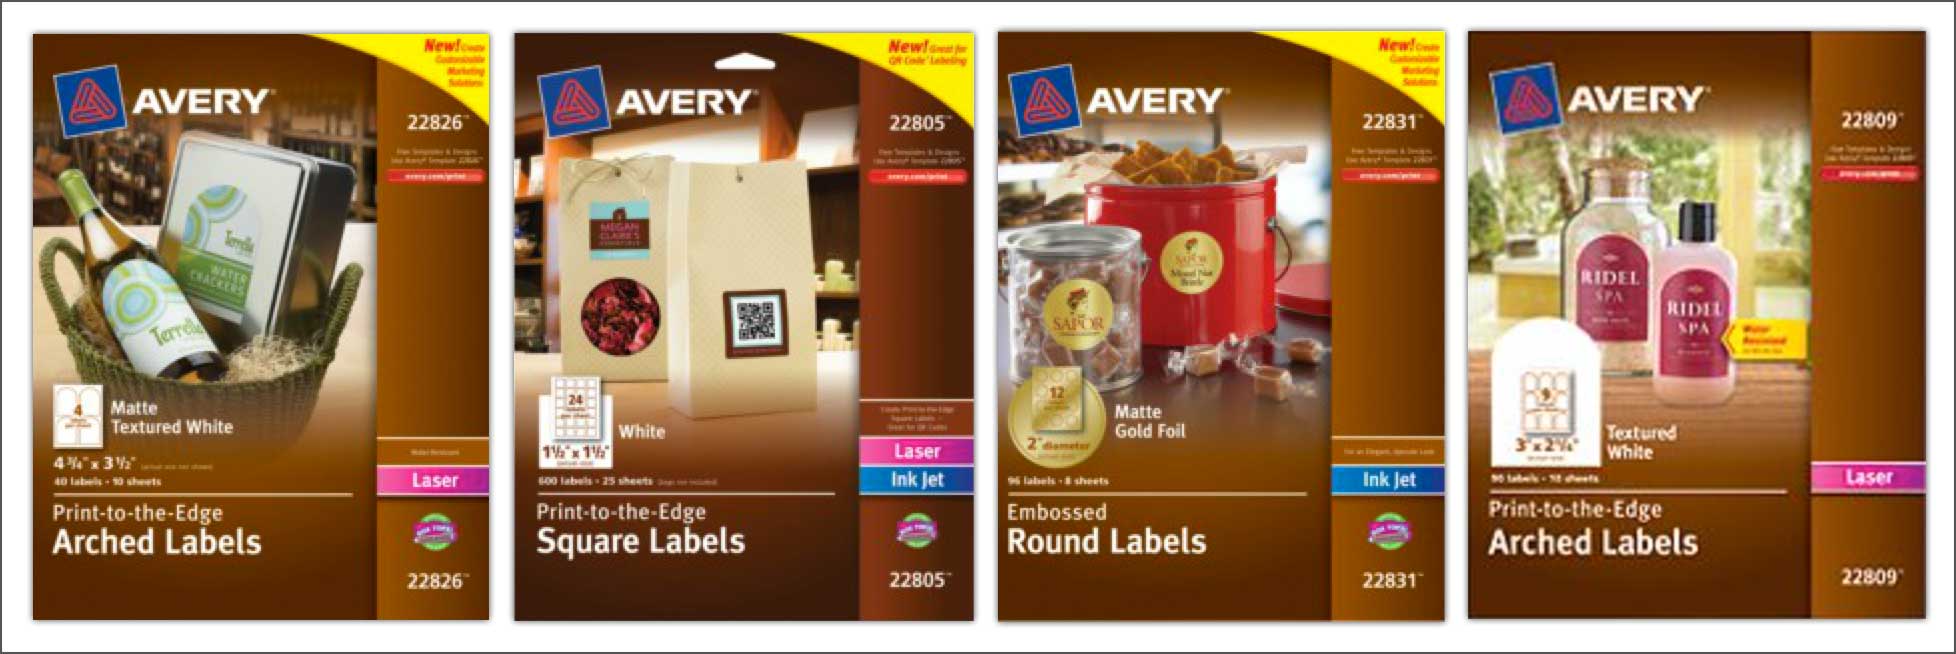 Avery marketing labels box shots.